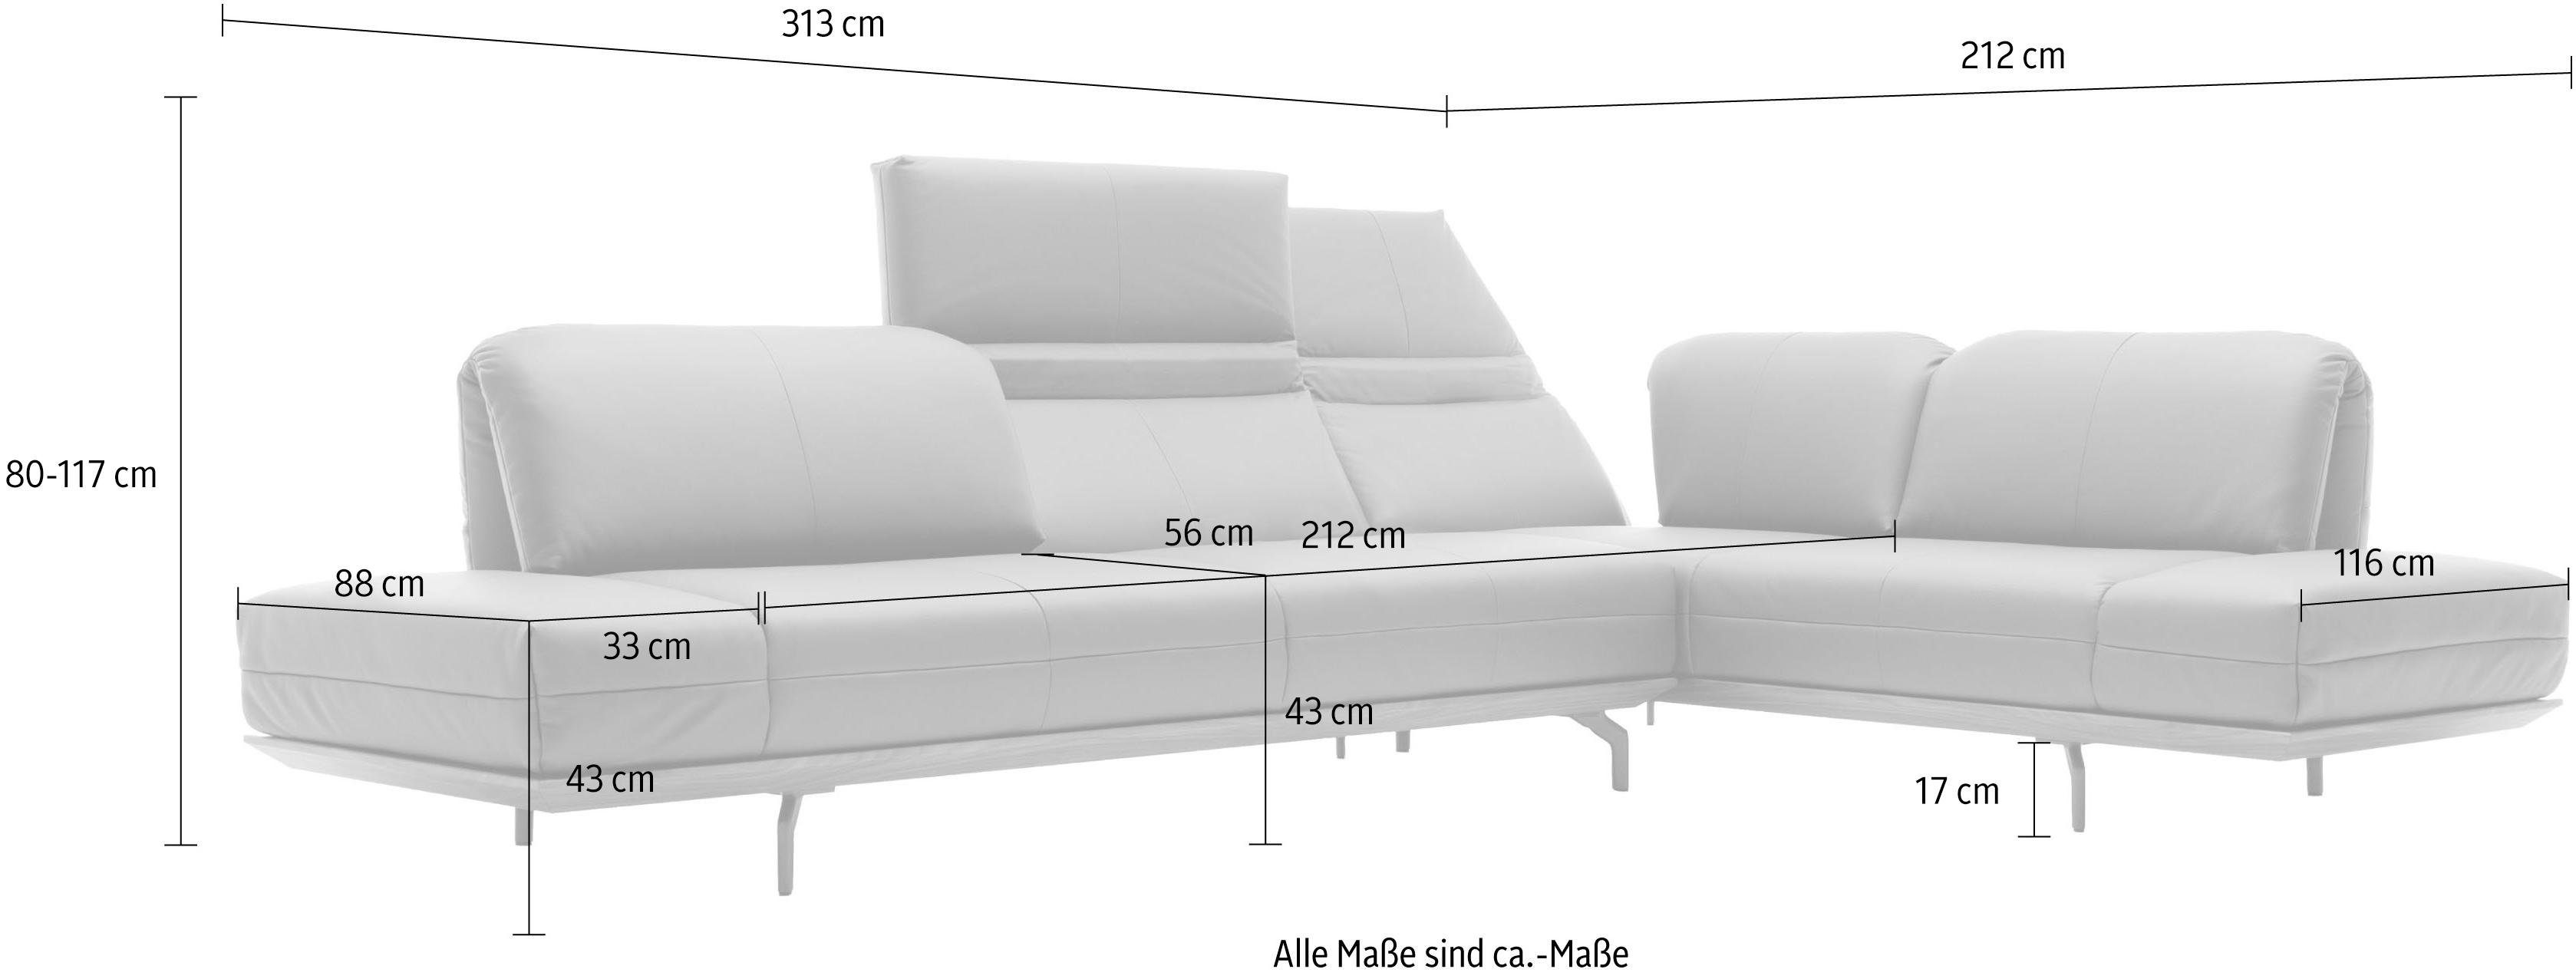 hs.420, oder Natur in Qualitäten, sofa in cm Ecksofa Holzrahmen 2 313 Nußbaum, hülsta Breite Eiche